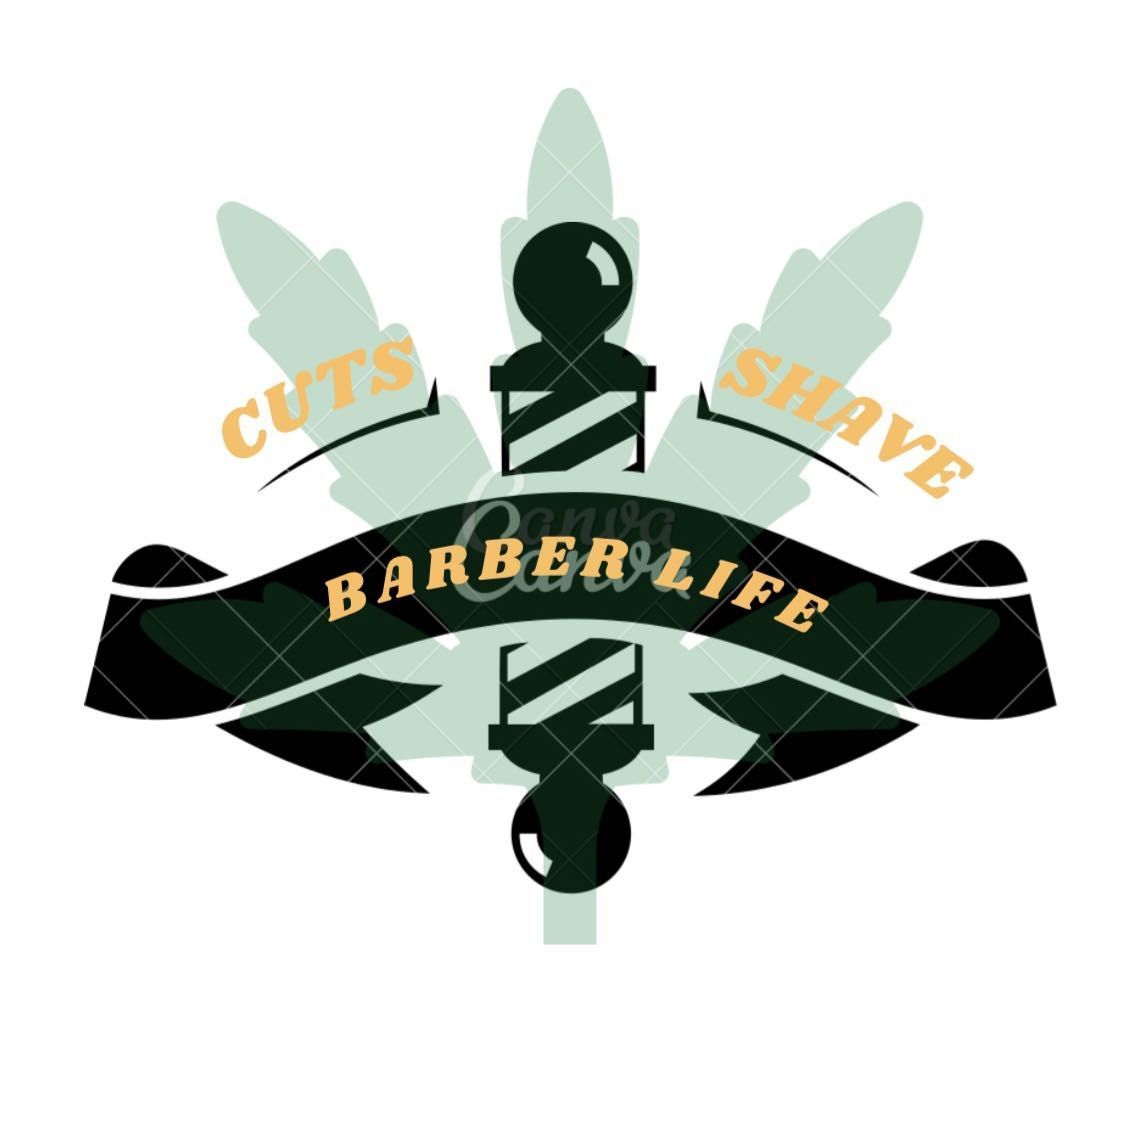 Xplicit Barber Shop, 14068 VANOWEN ST. (Vanowen & Hazeltine), XPLICIT BARBER SHOP, Van Nuys, Van Nuys 91405